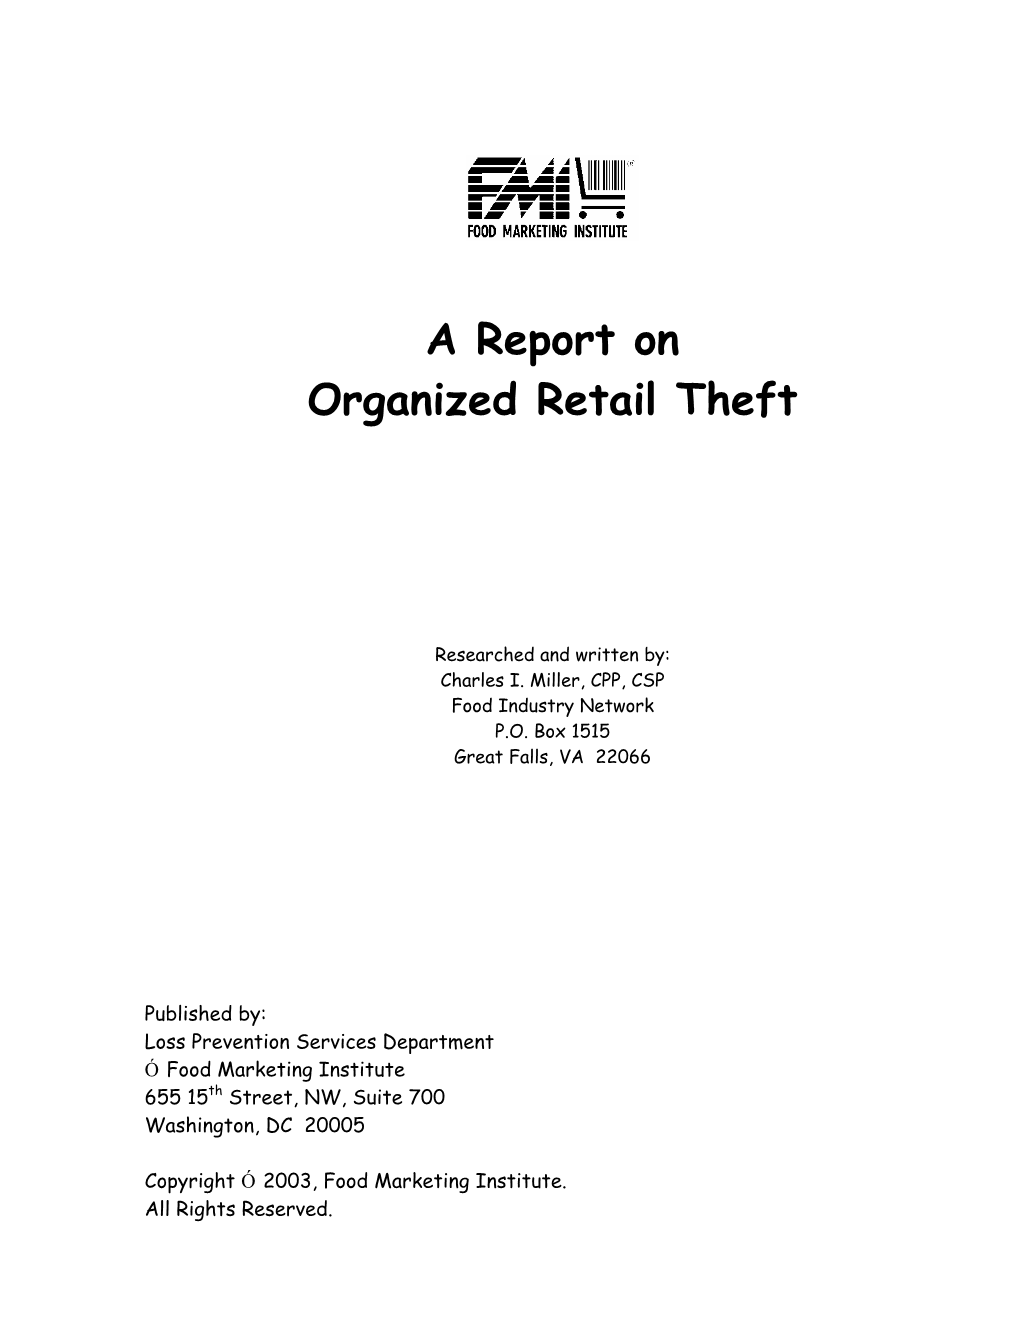 ORT Report Dec 2002